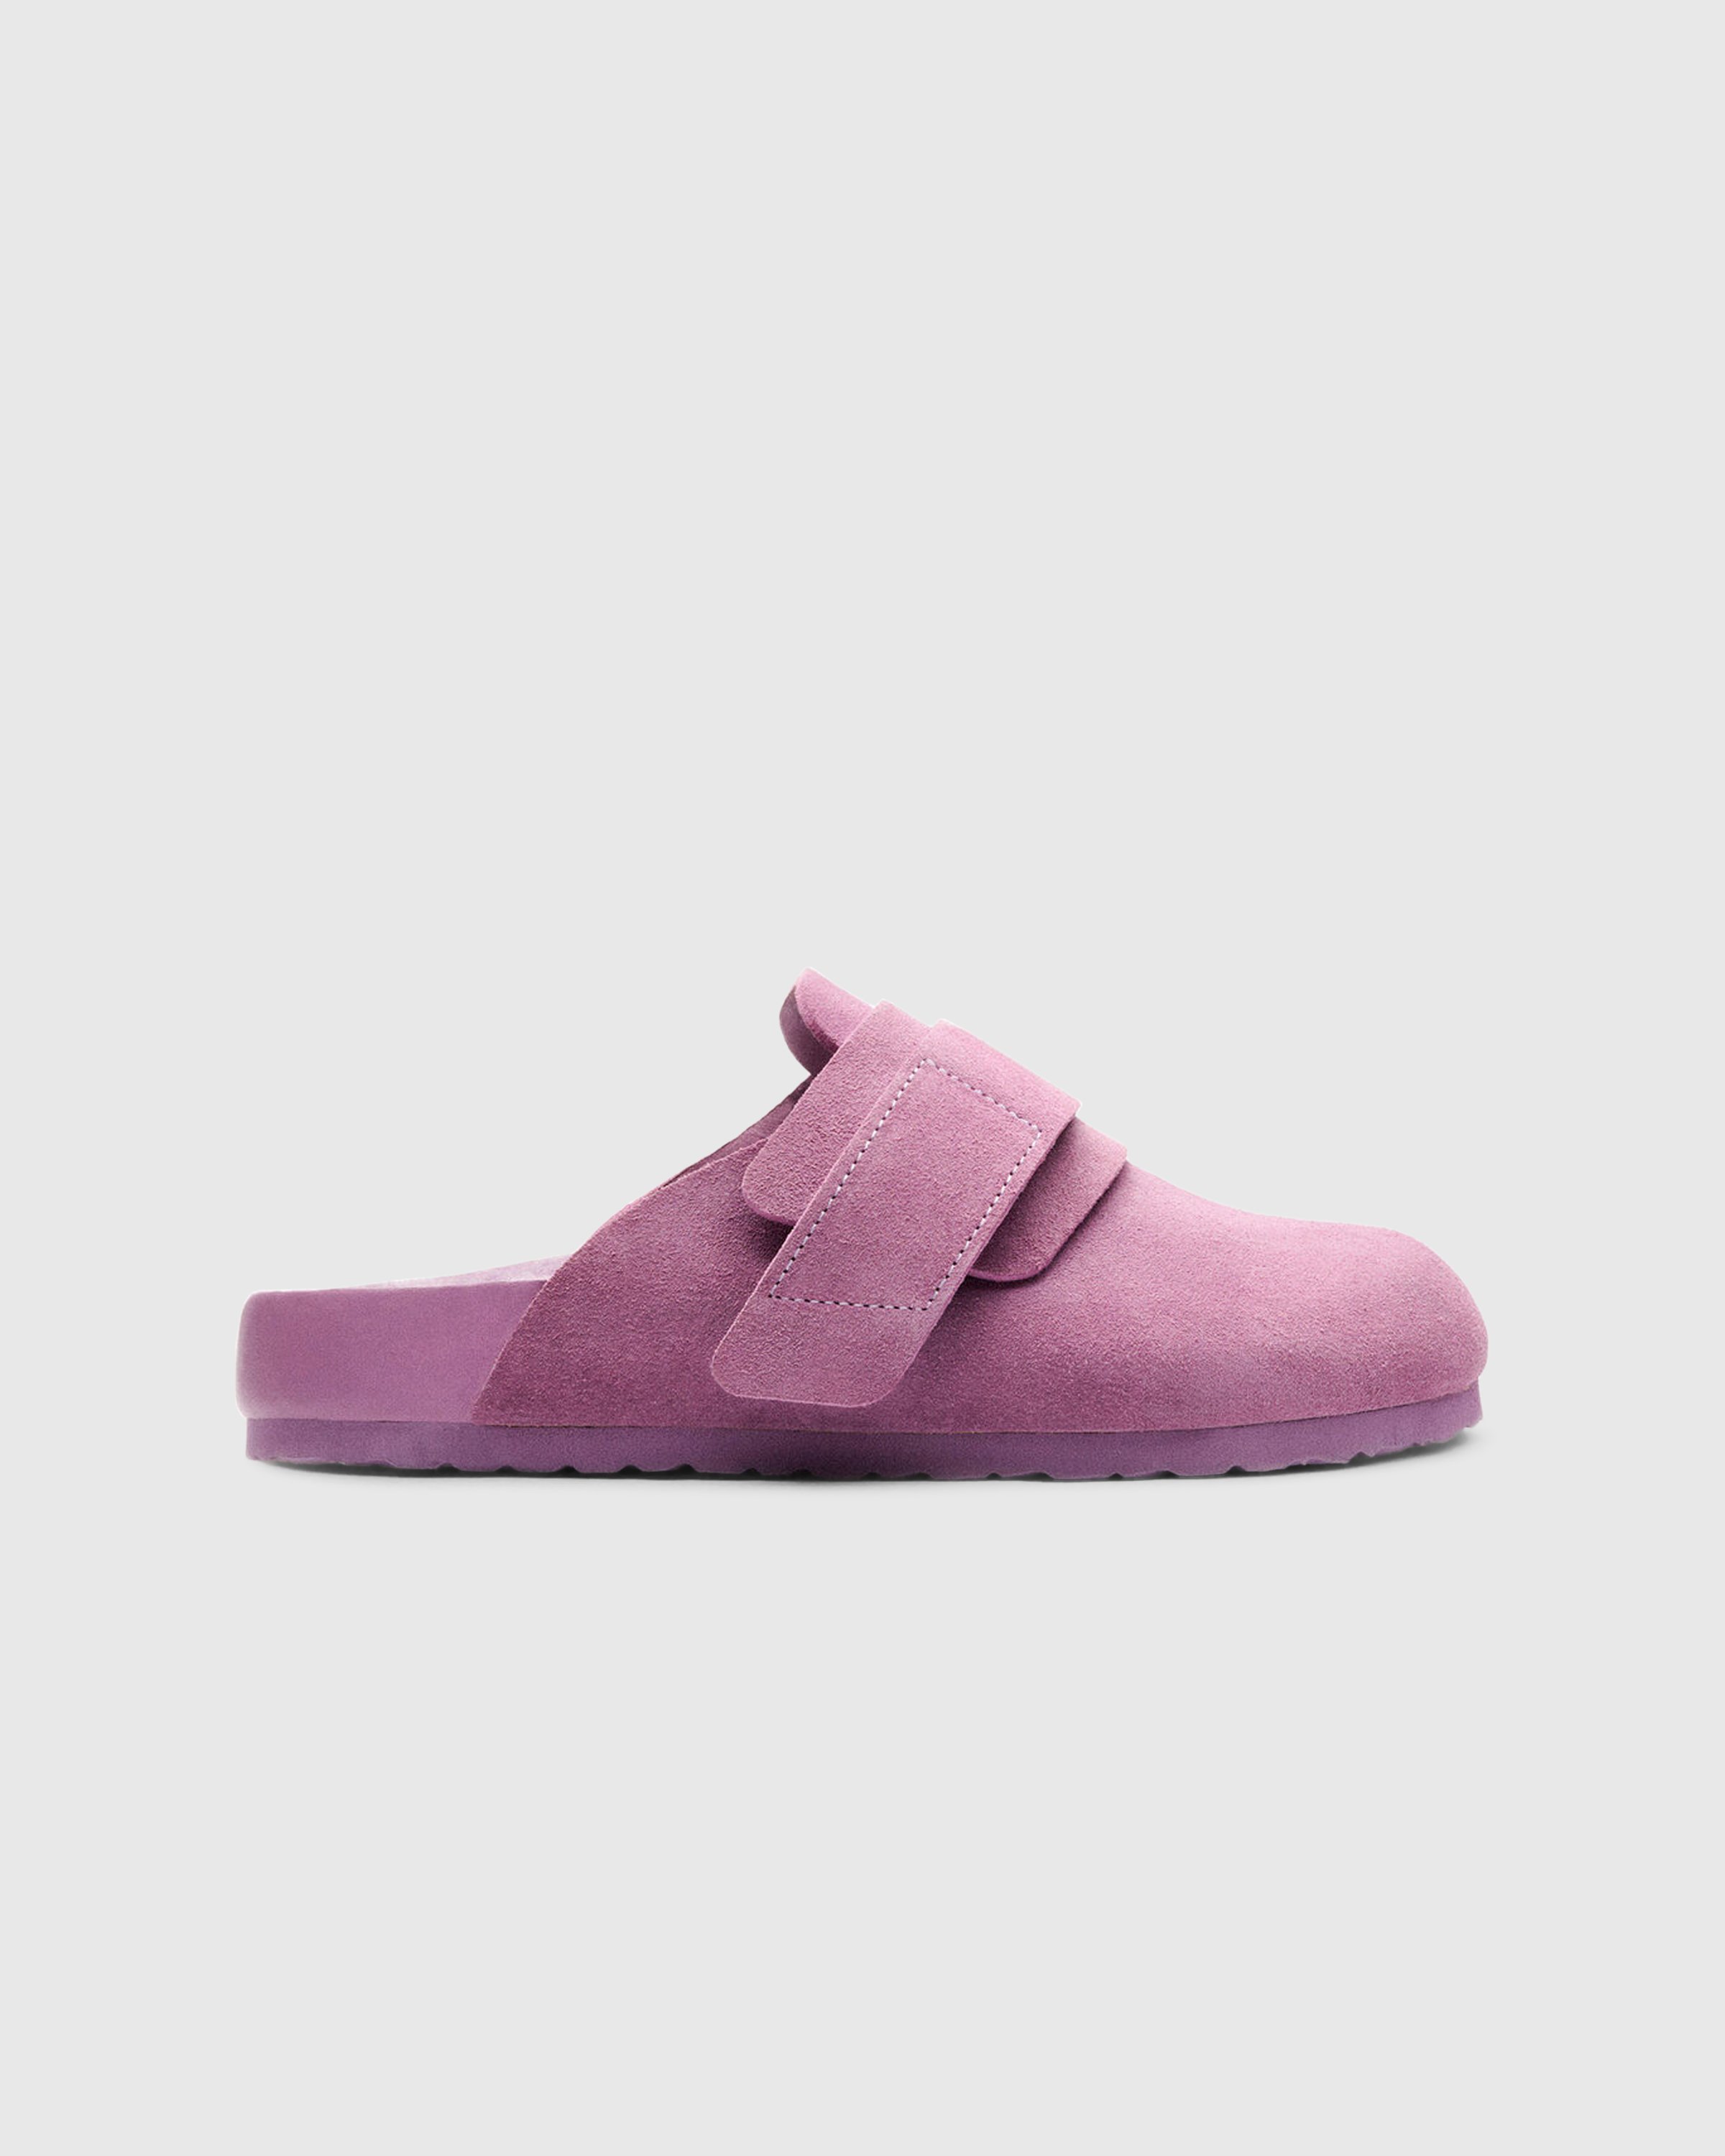 Birkenstock x Tekla - Shearling Nagoya Mauve/Purple - Footwear - Purple - Image 1